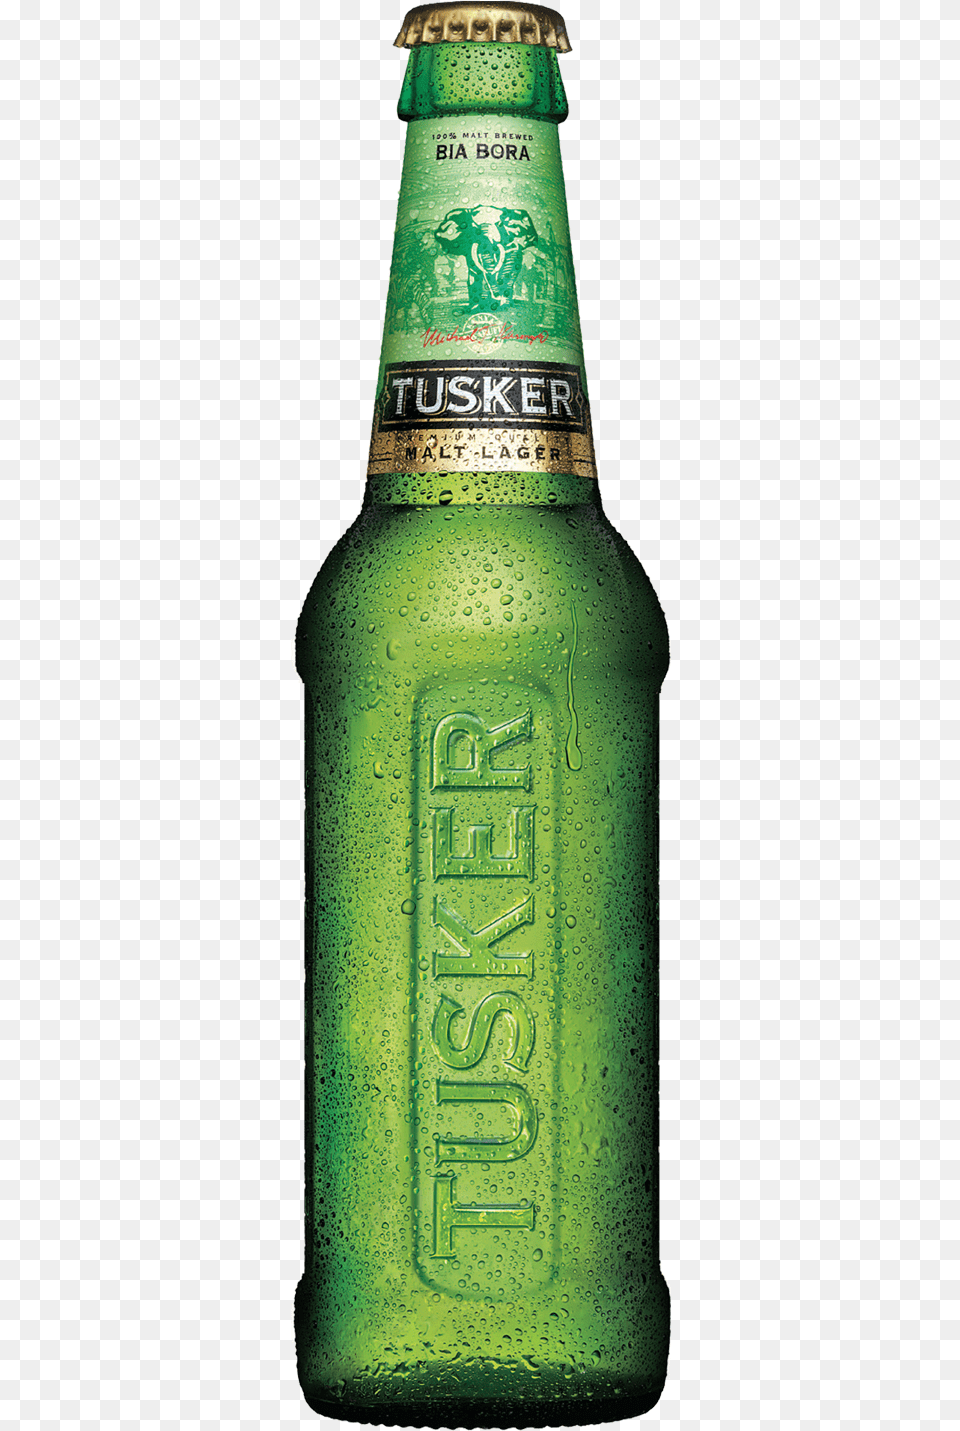 Tusker Malt Lager Tusker Malt New Bottle, Alcohol, Beer, Beer Bottle, Beverage Free Png Download